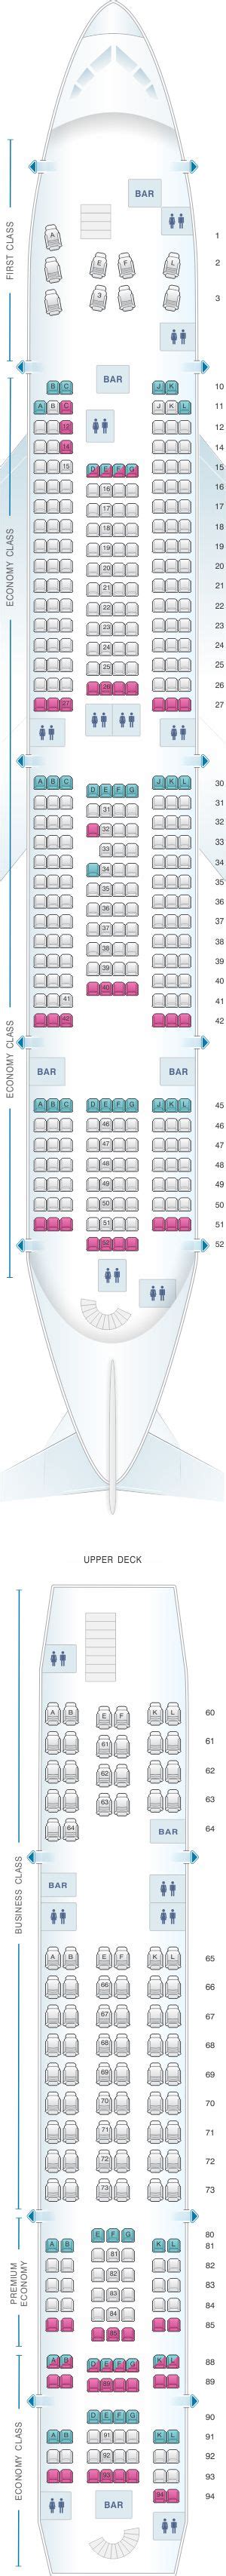 Seat Map Air France Airbus A380 International Long Haul 516pax Air